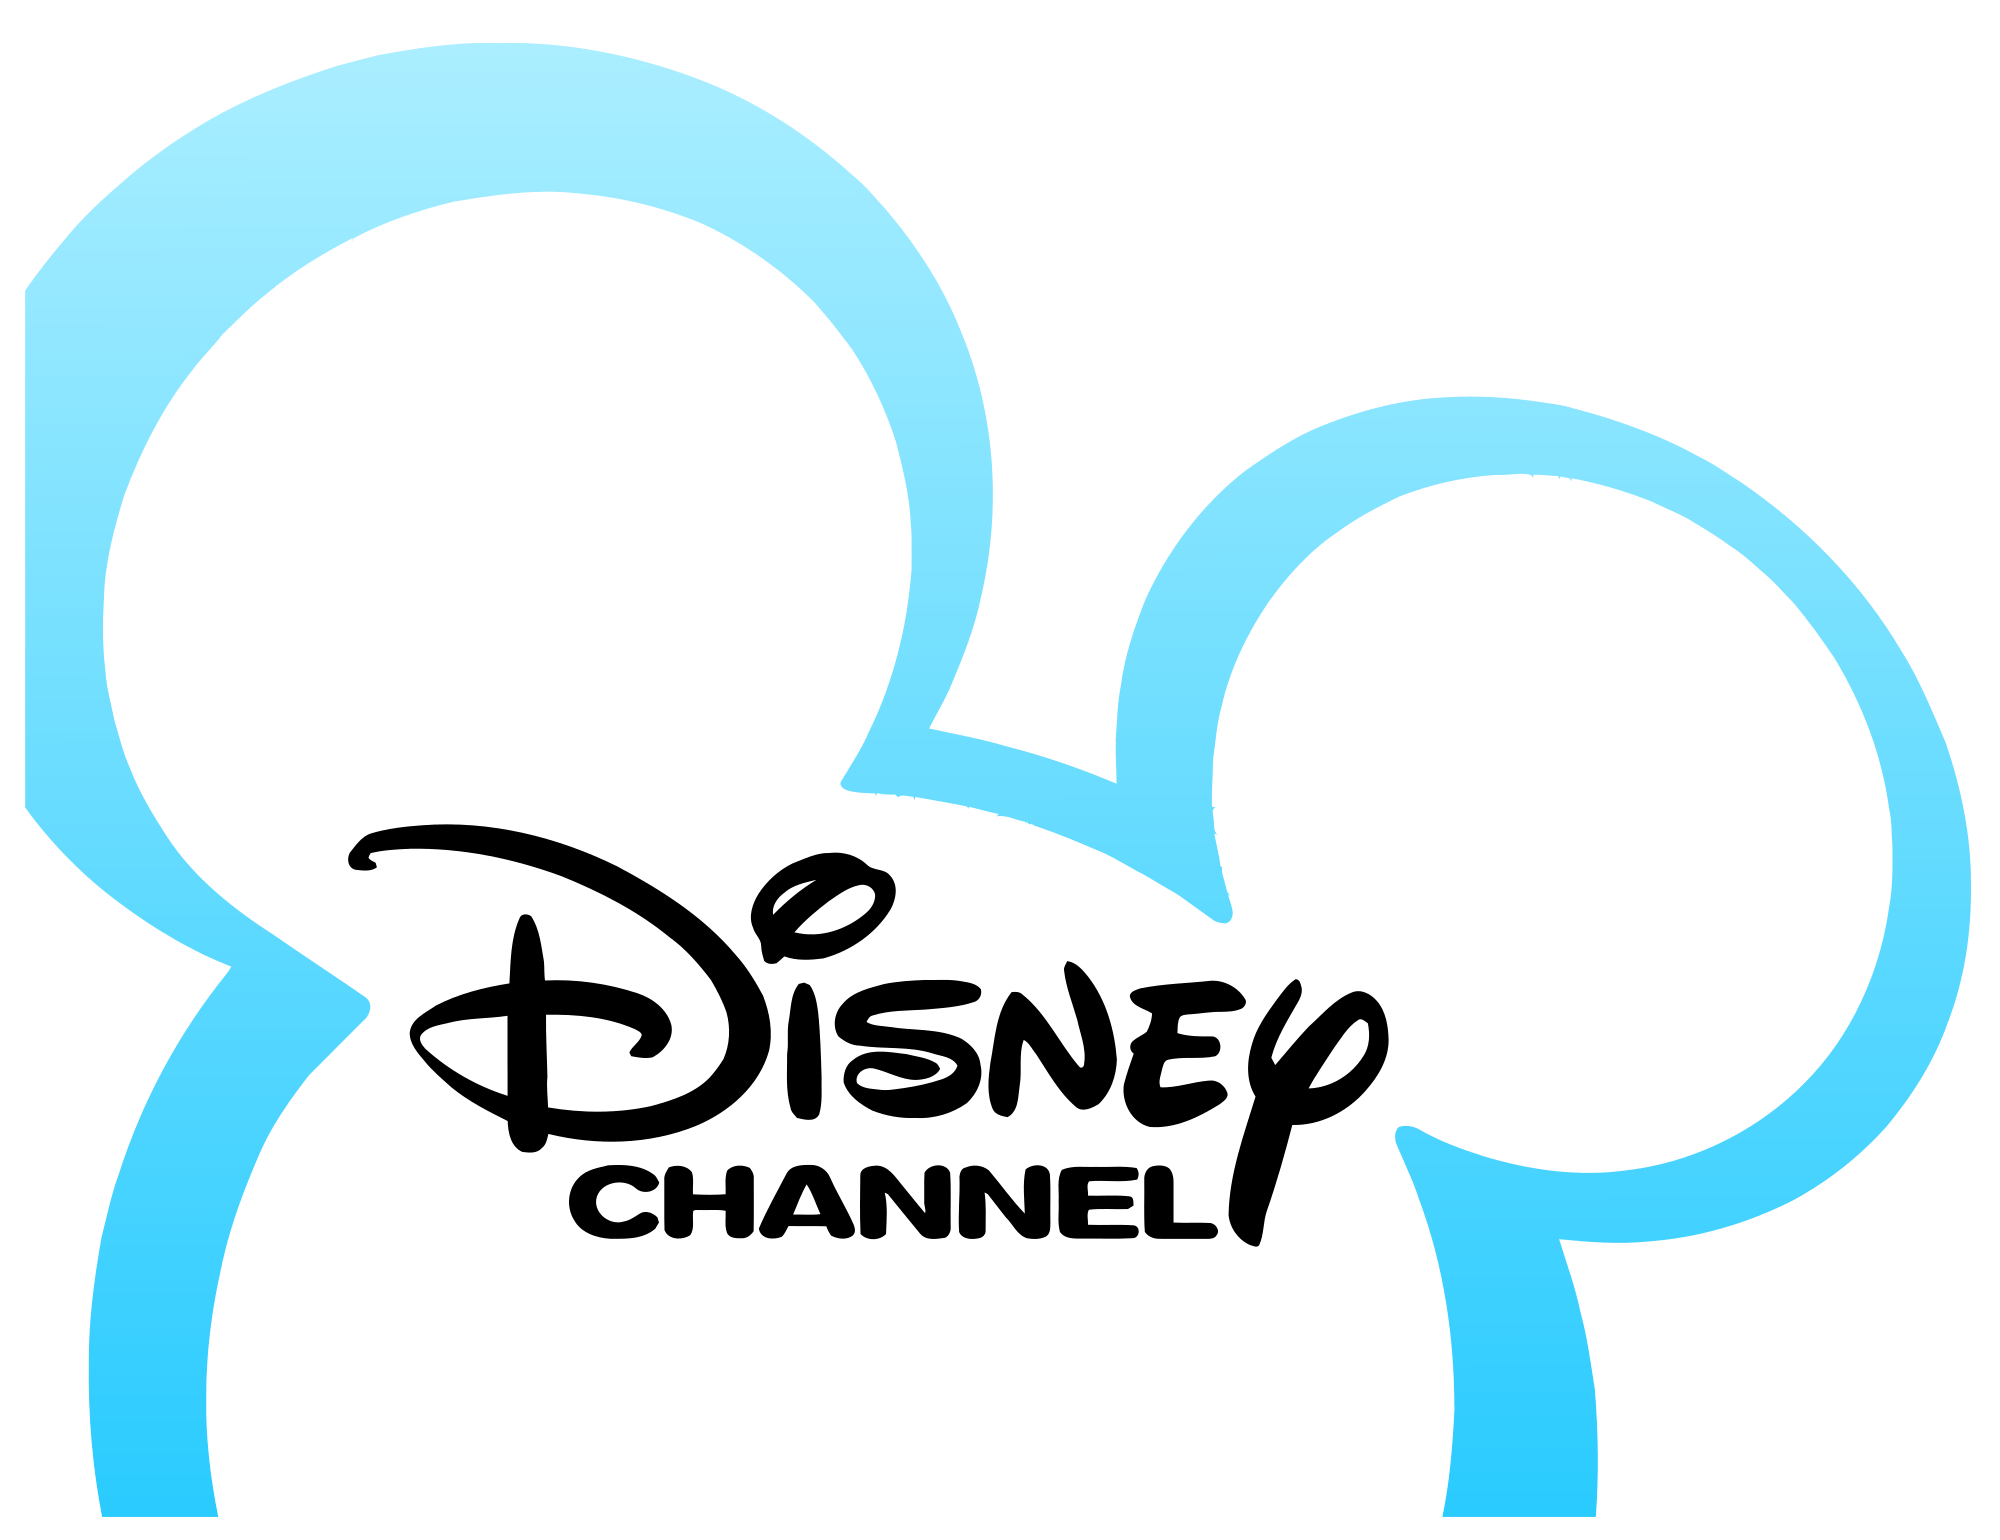 Disney Channel Logo - File:Disney Channel logo.svg - Wikimedia Commons